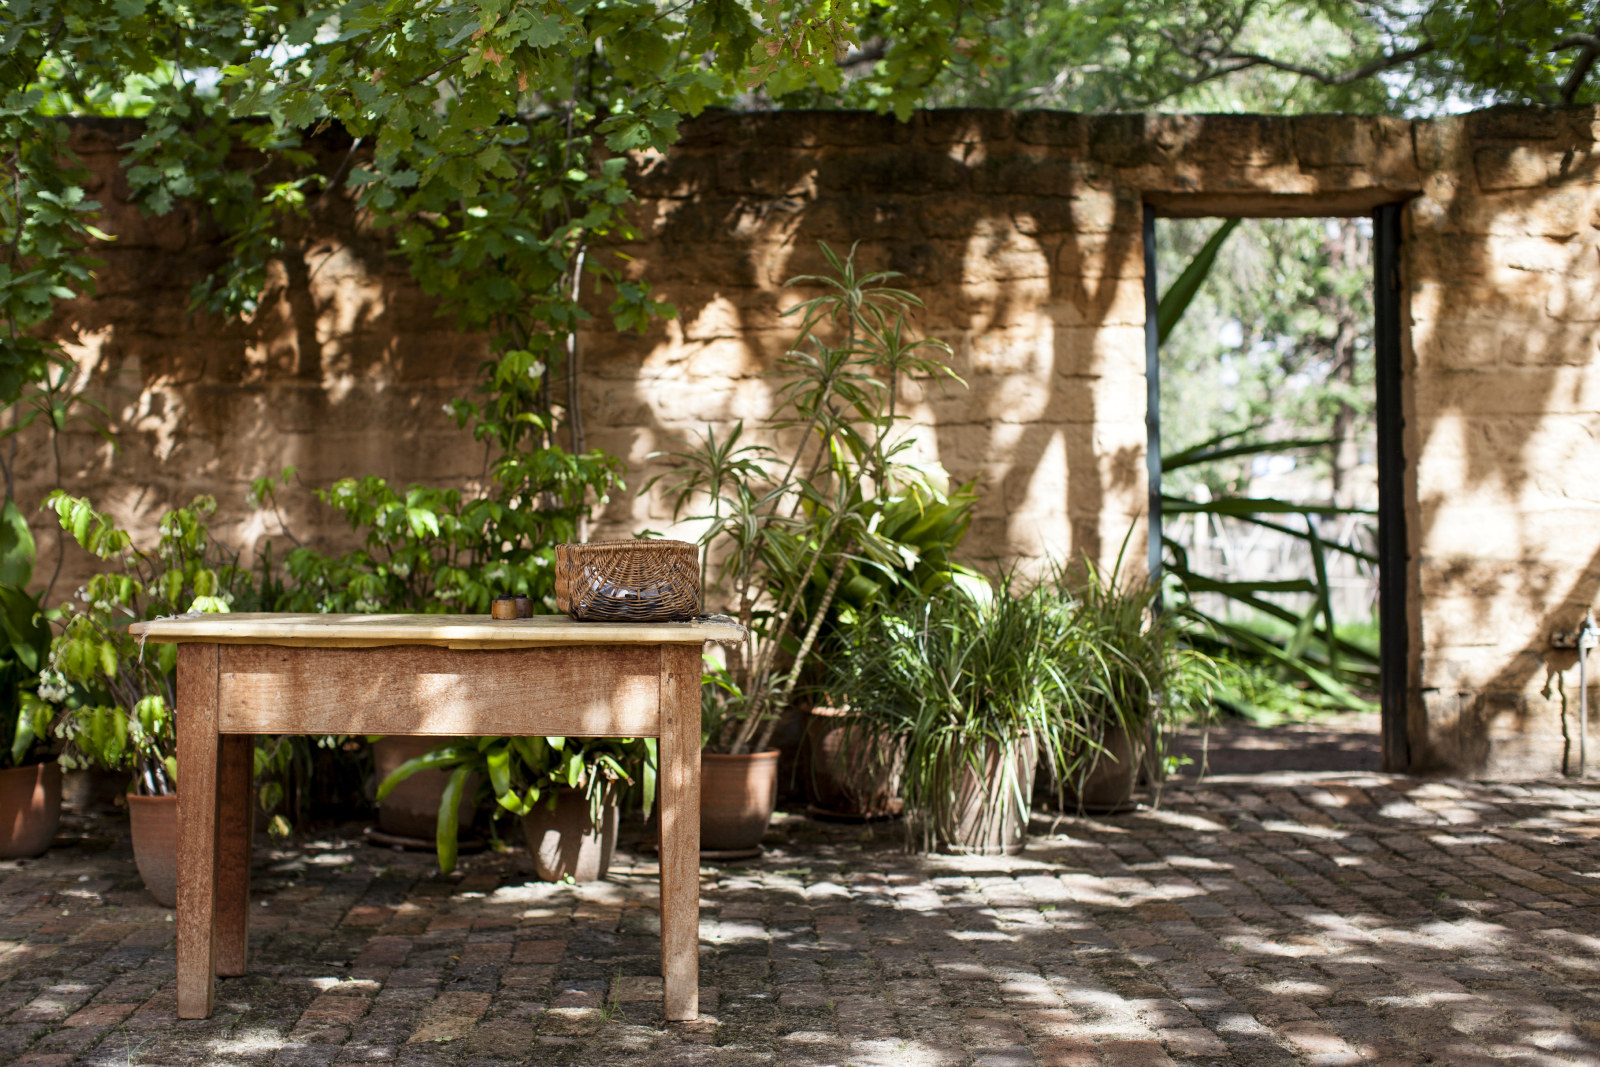 Table in oak tree courtyard at Elizabeth Farm